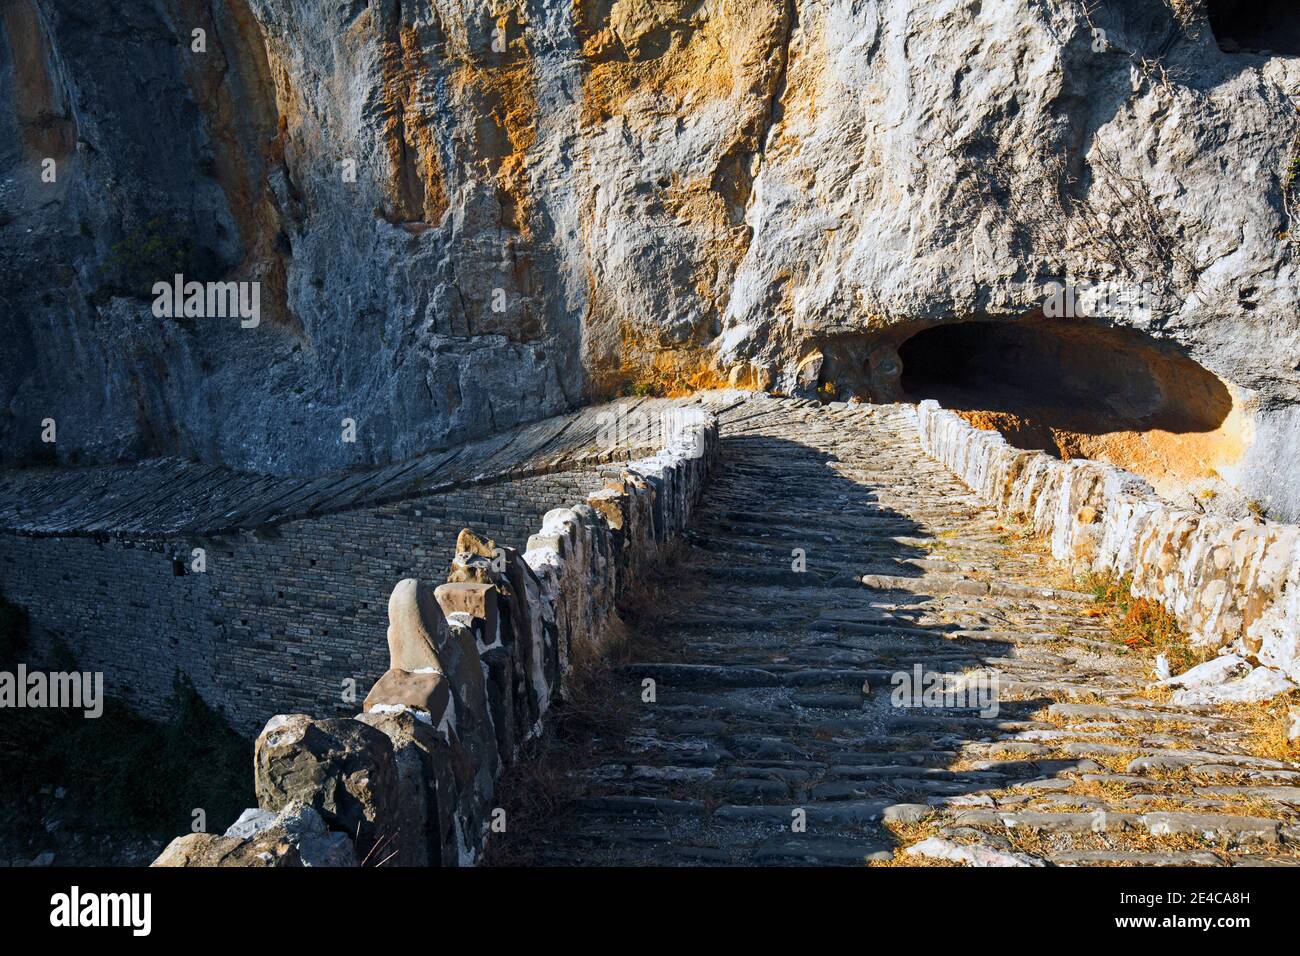 Il ponte in pietra ad arco singolo Kokkoris è stato costruito nel 1750, si estende su una stretta valle del ruscello tra due pareti ripide, regione montuosa dell'Epiro, Grecia settentrionale Foto Stock